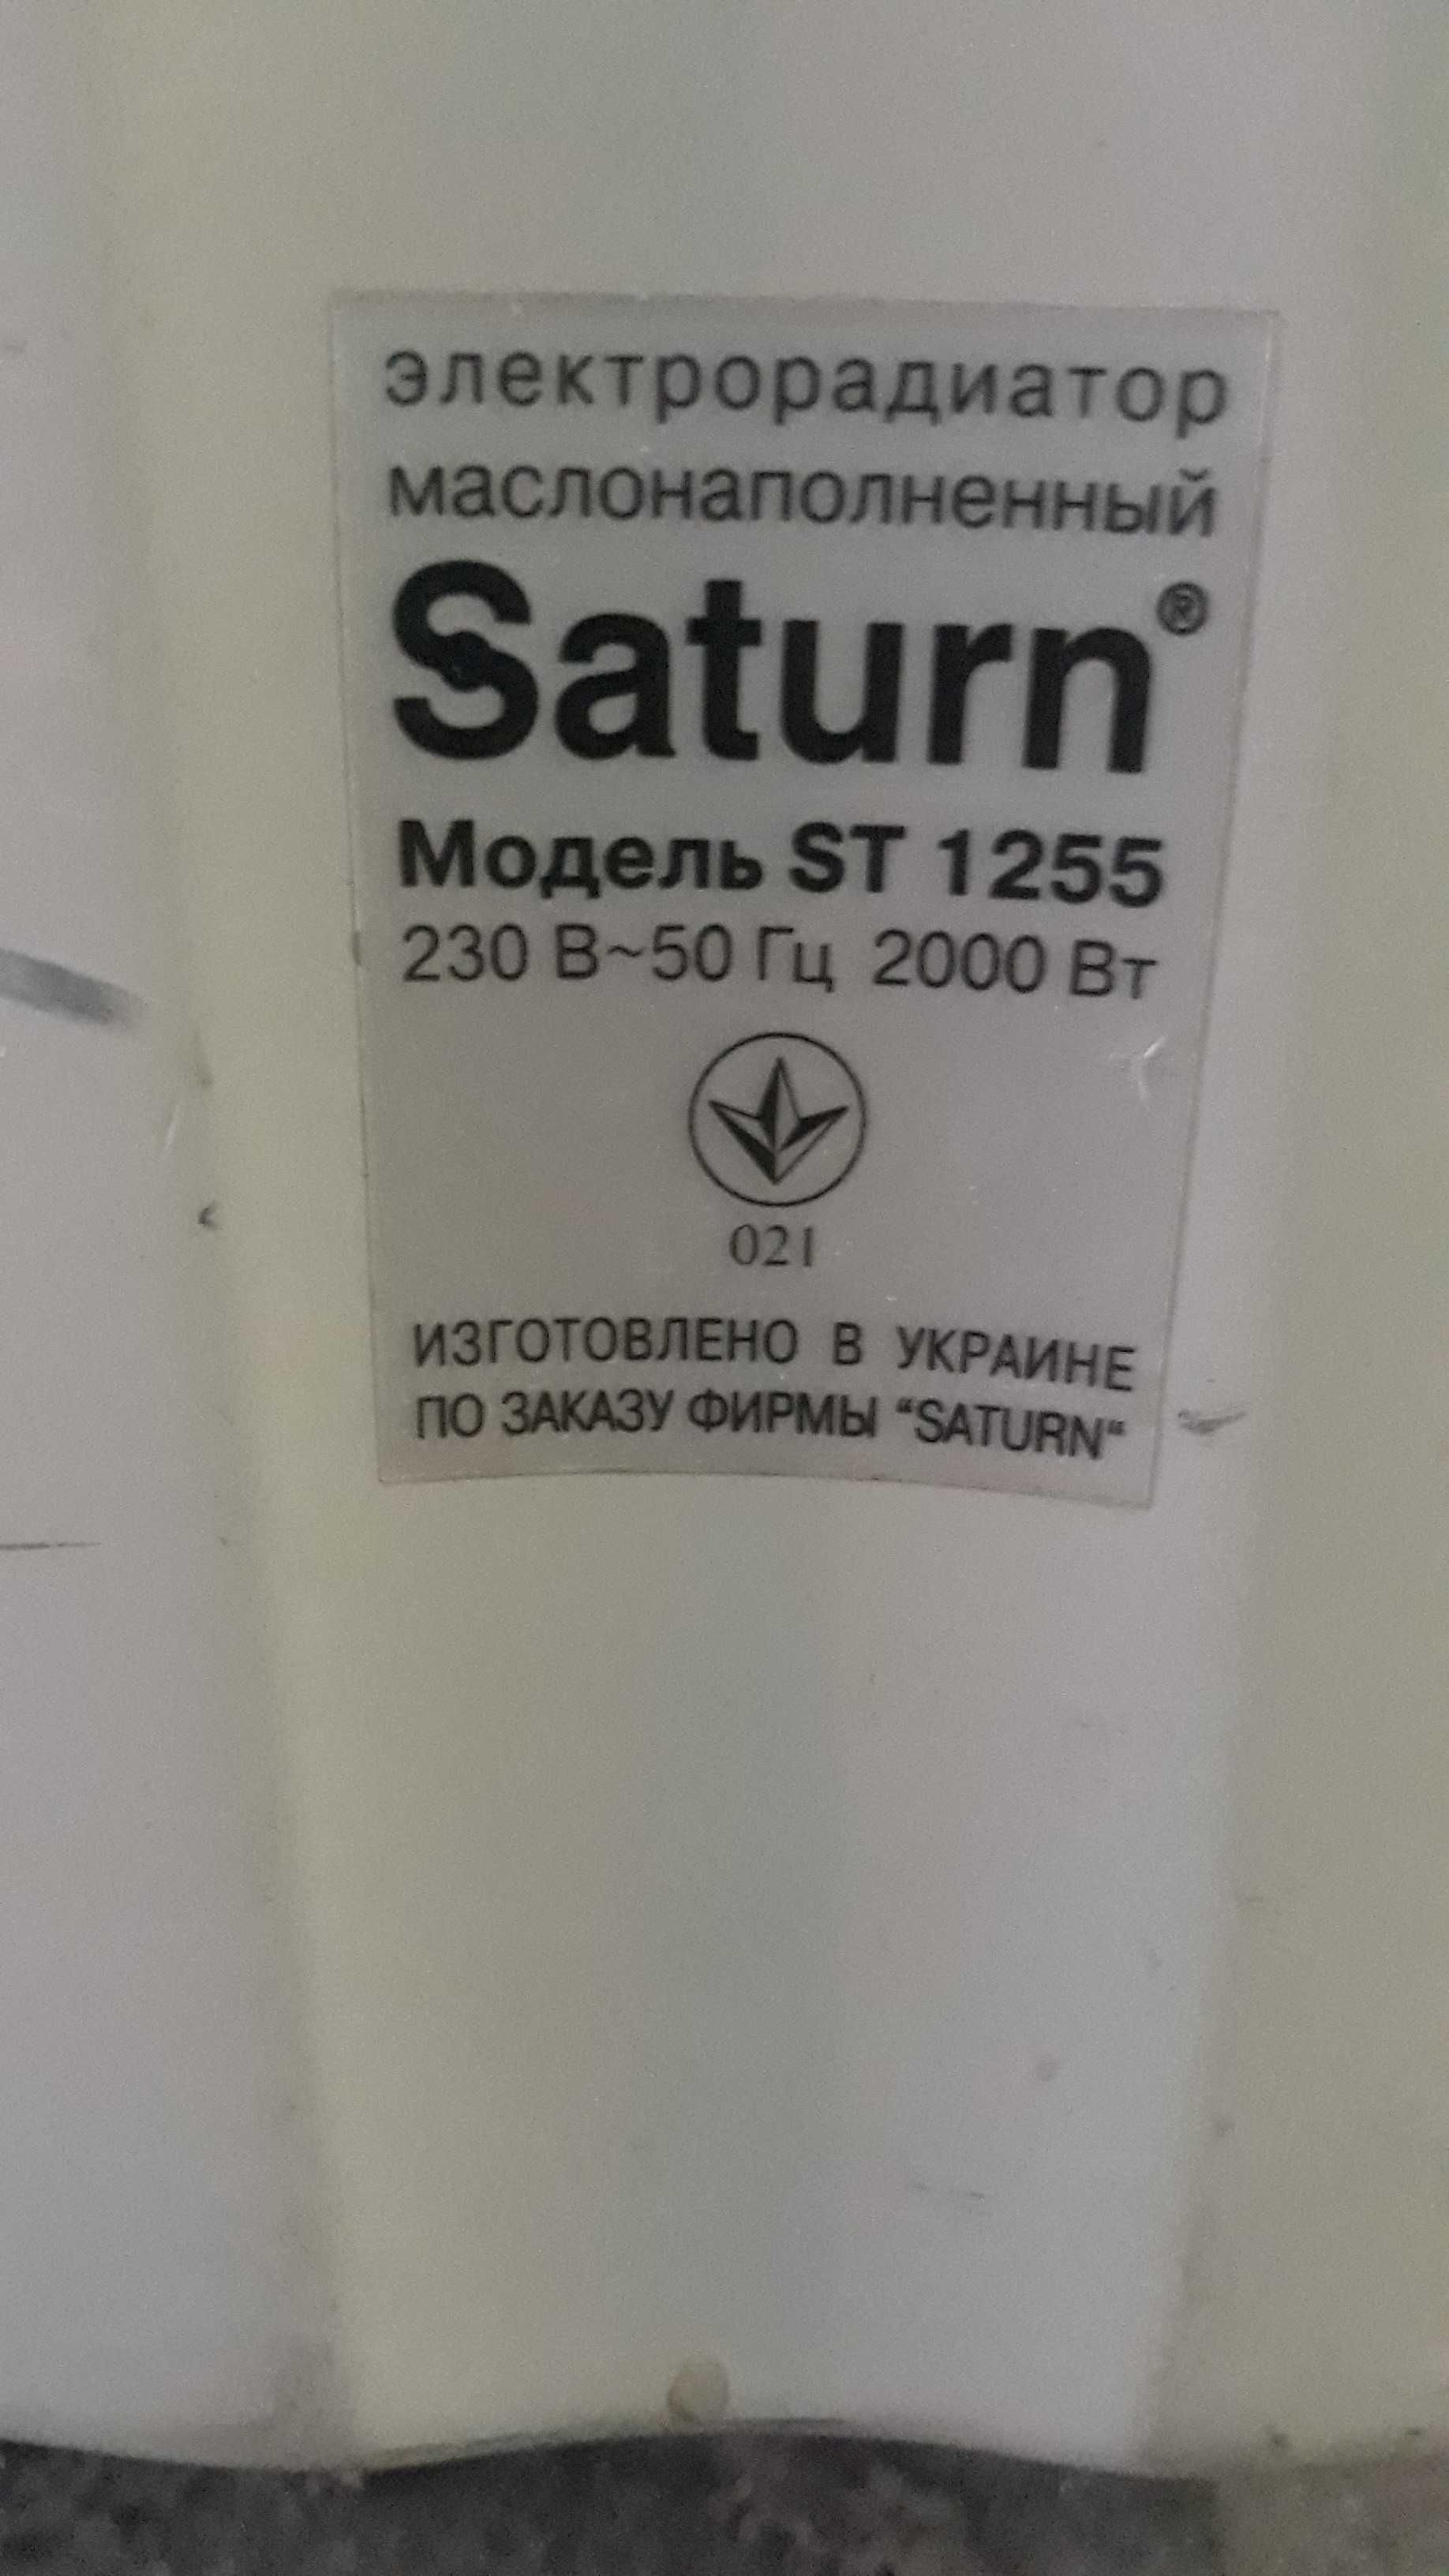 Масляный обогреватель Saturn ST-1255